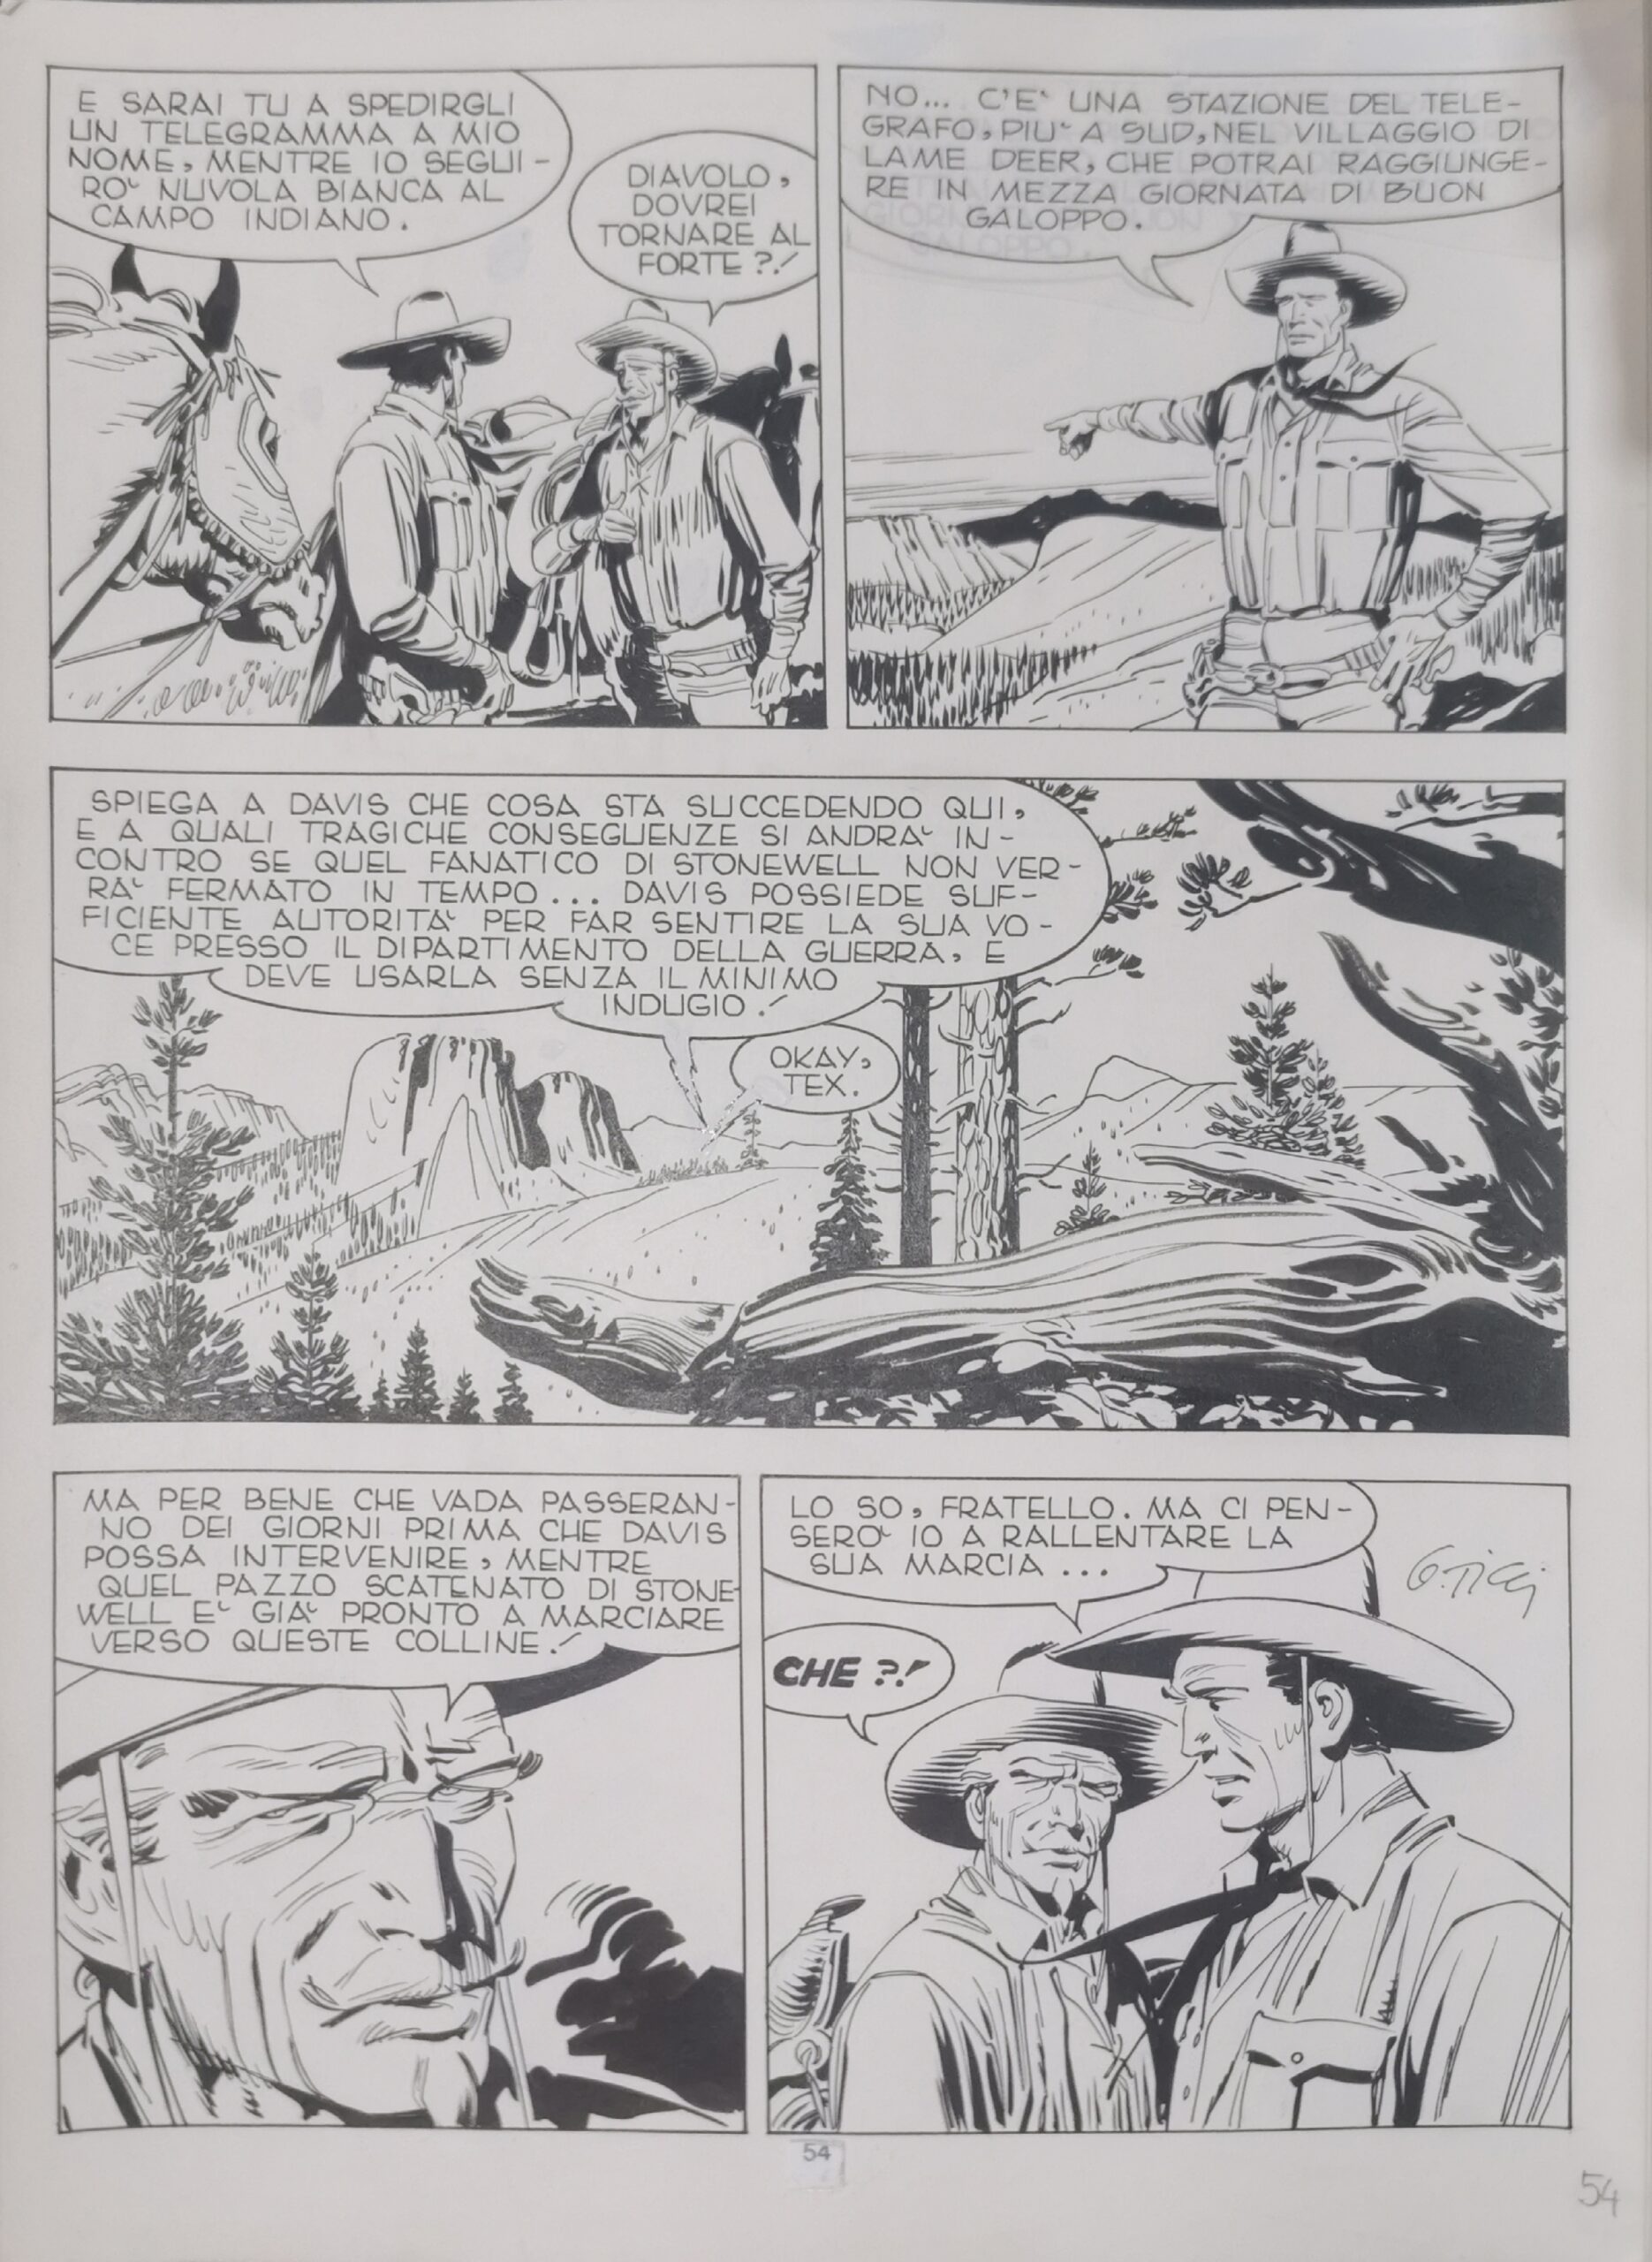 Tavola originale Tex n. 360 ” Le Colline del Vento” – Ticci Giovanni – pag. 54